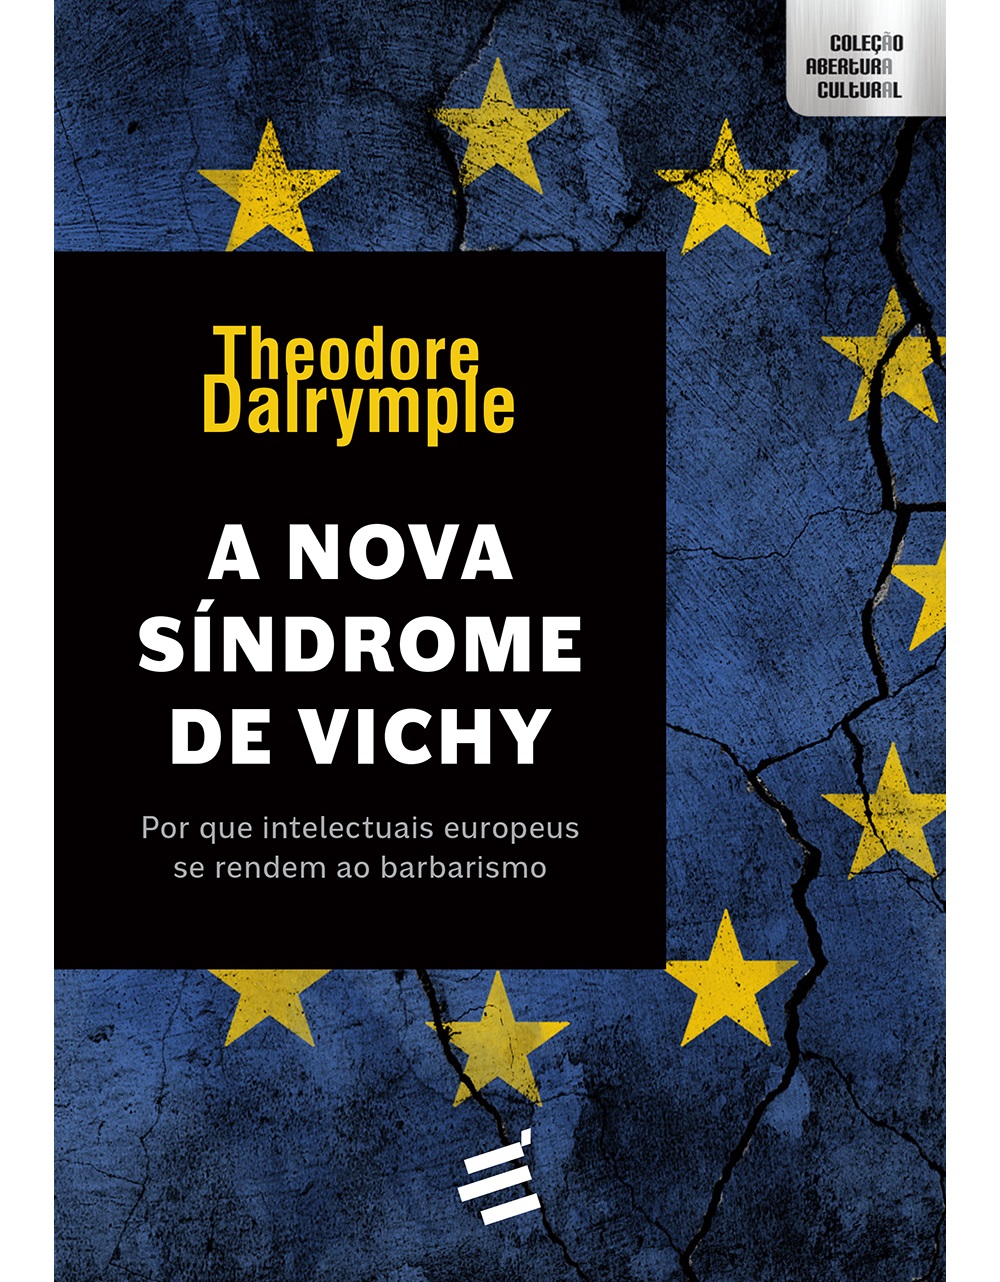 Vichy: História da estampa mais clássica - Estratosfera